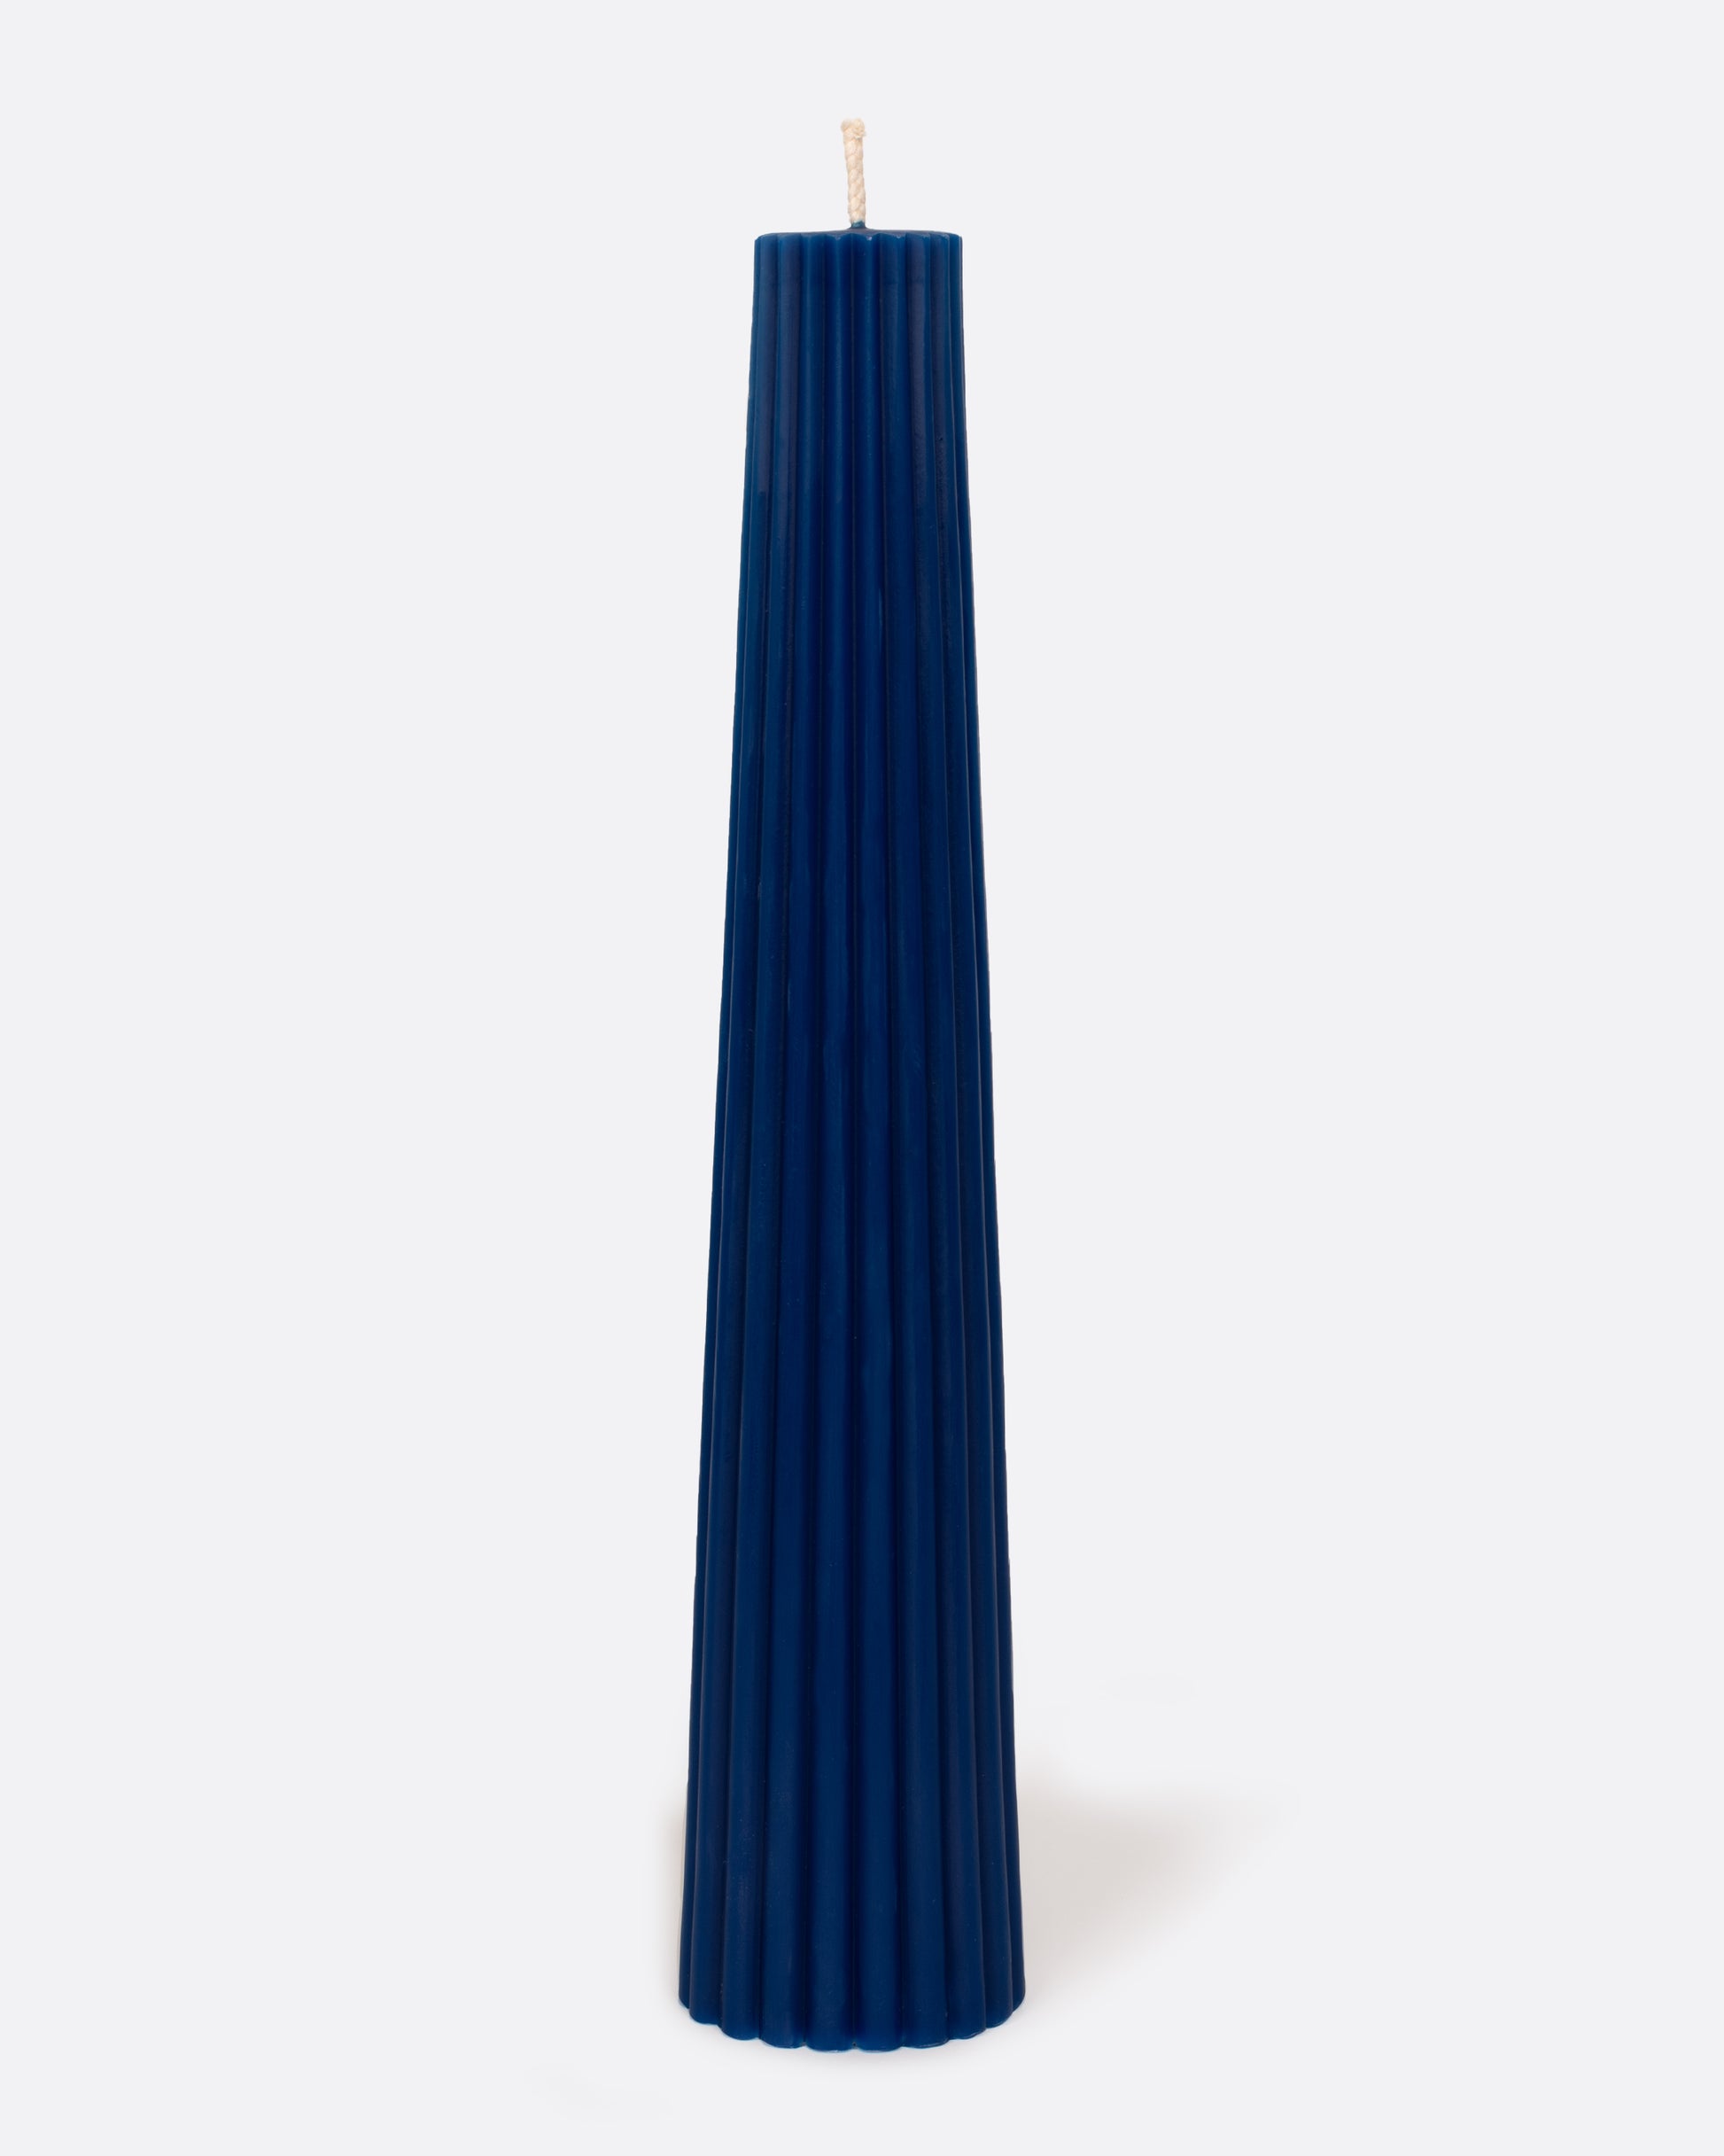 Cobalt blue fluted pillar candle, shown standing.